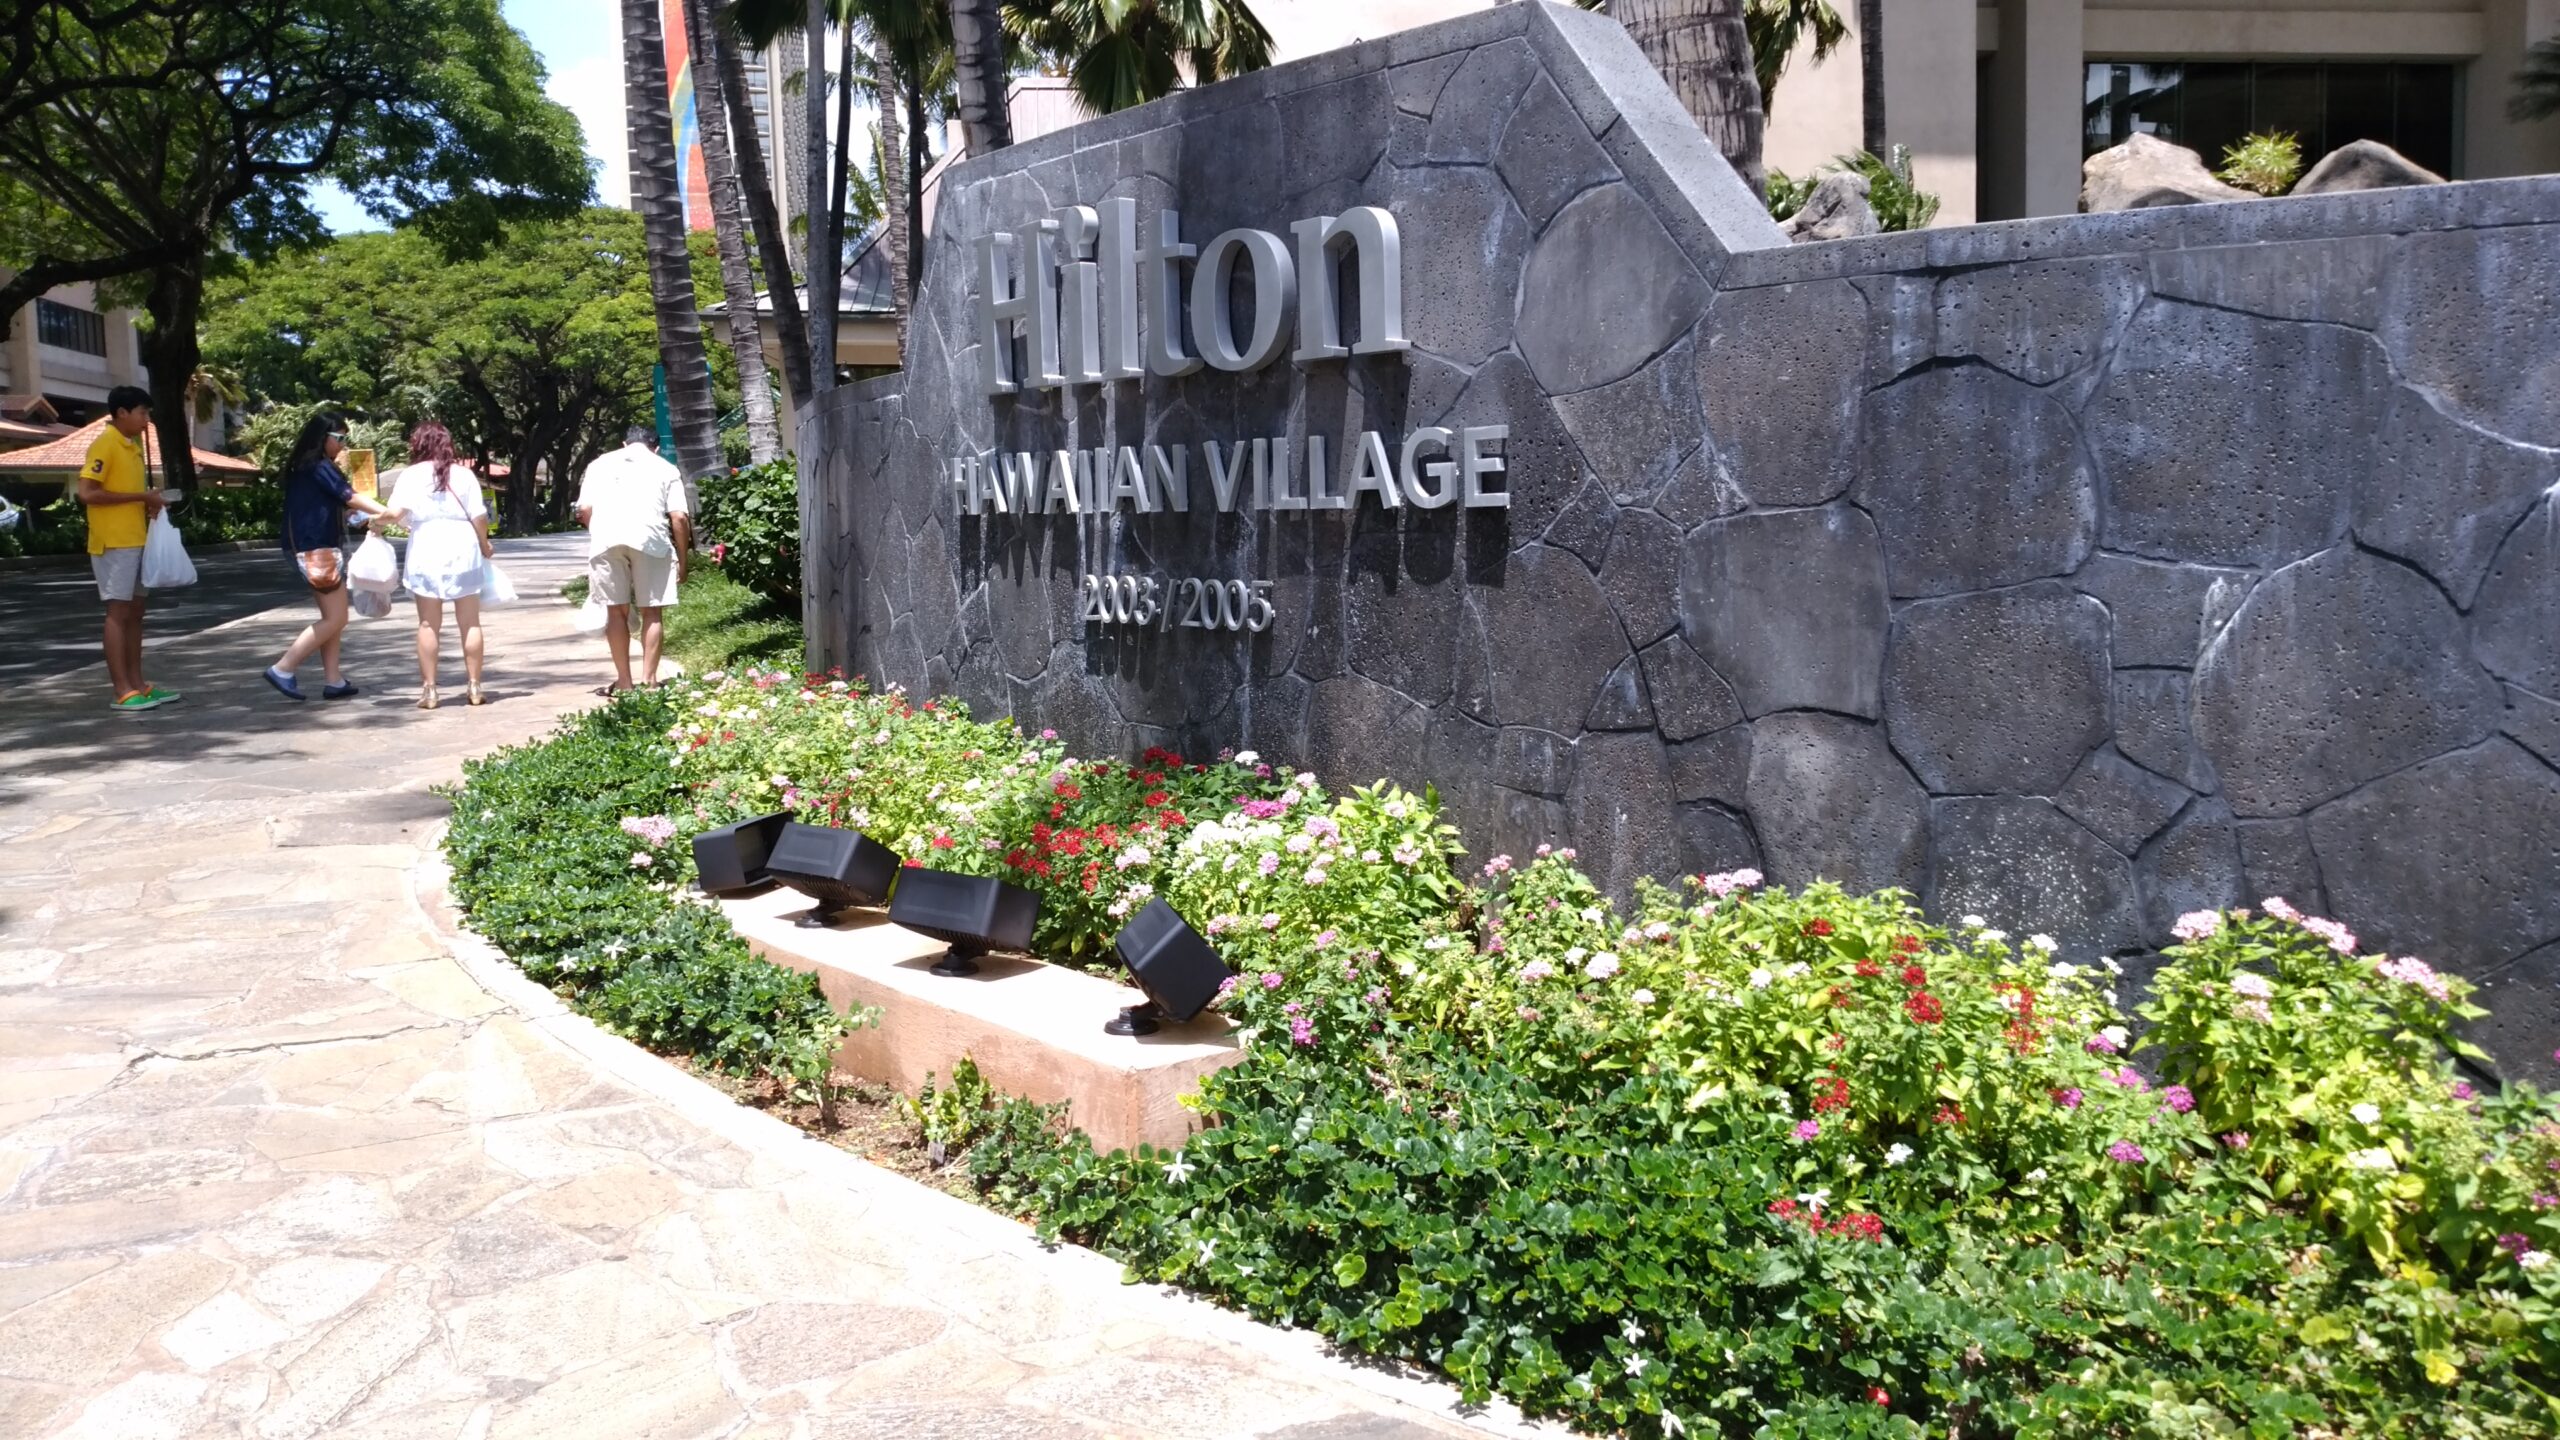 Hilton Hawaiian village